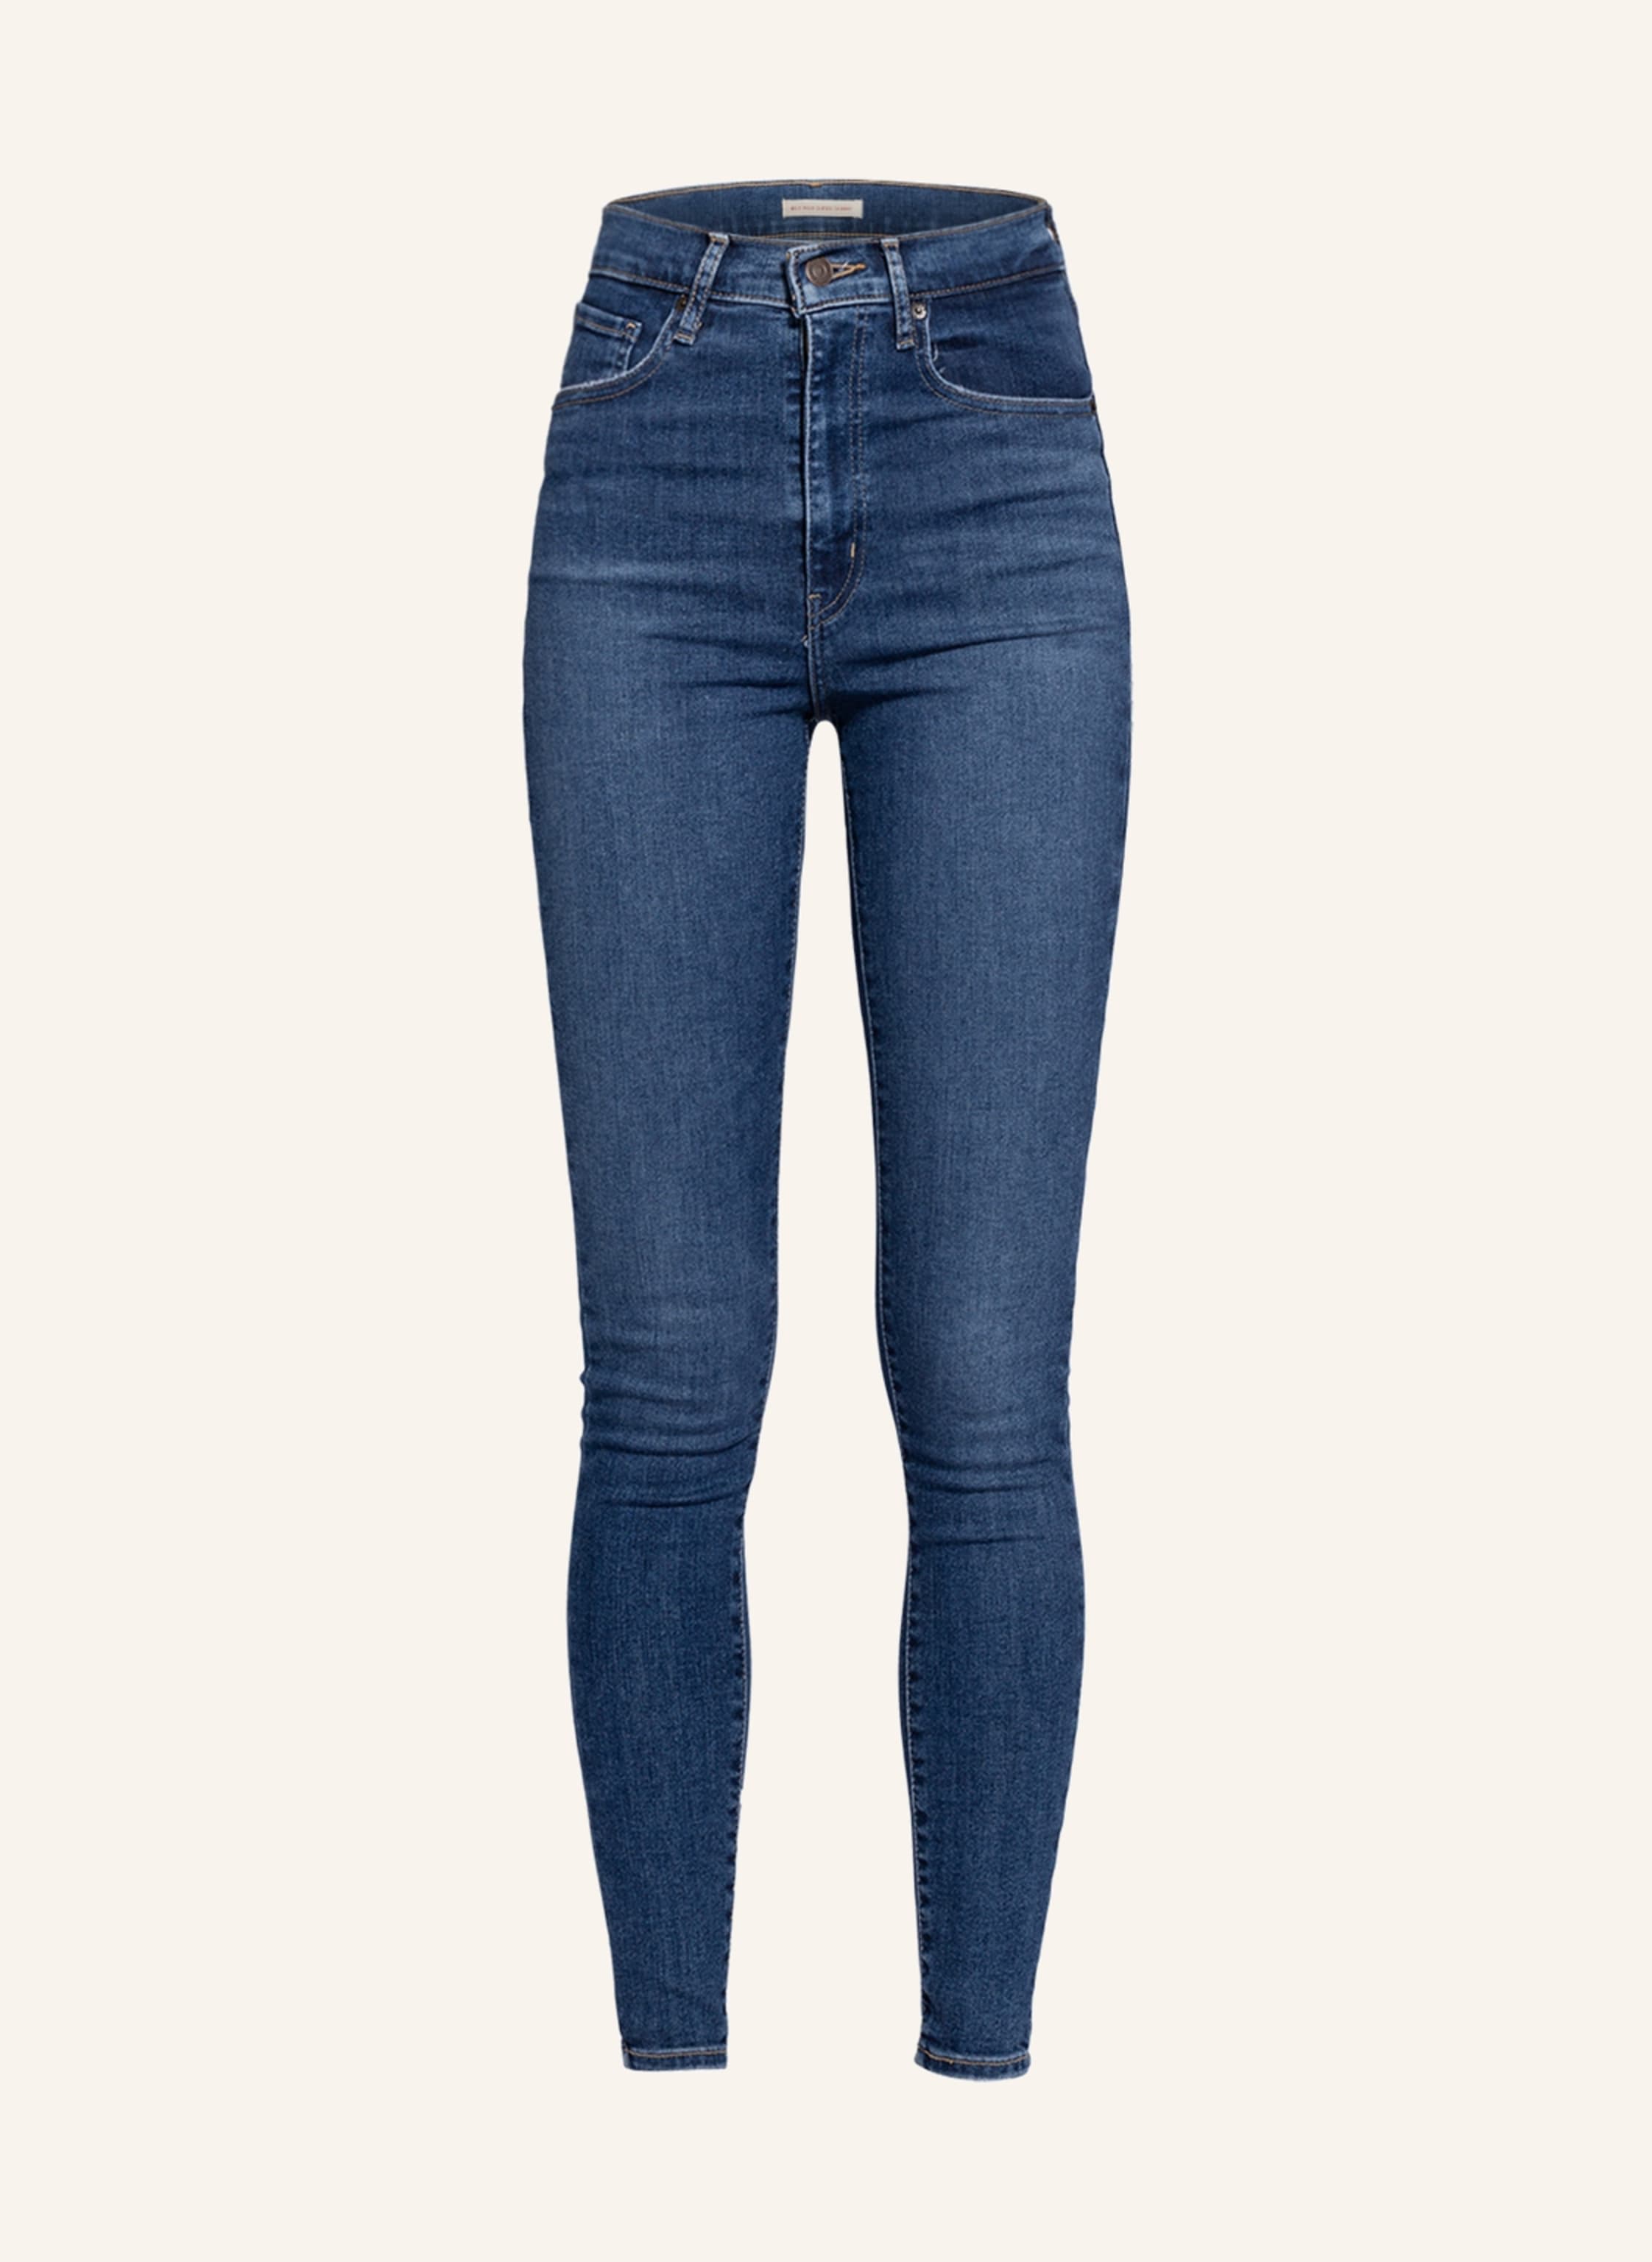 Levi's® Skinny Jeans MILE HIGH SUPER SKINNY in 94 dark indigo - worn in